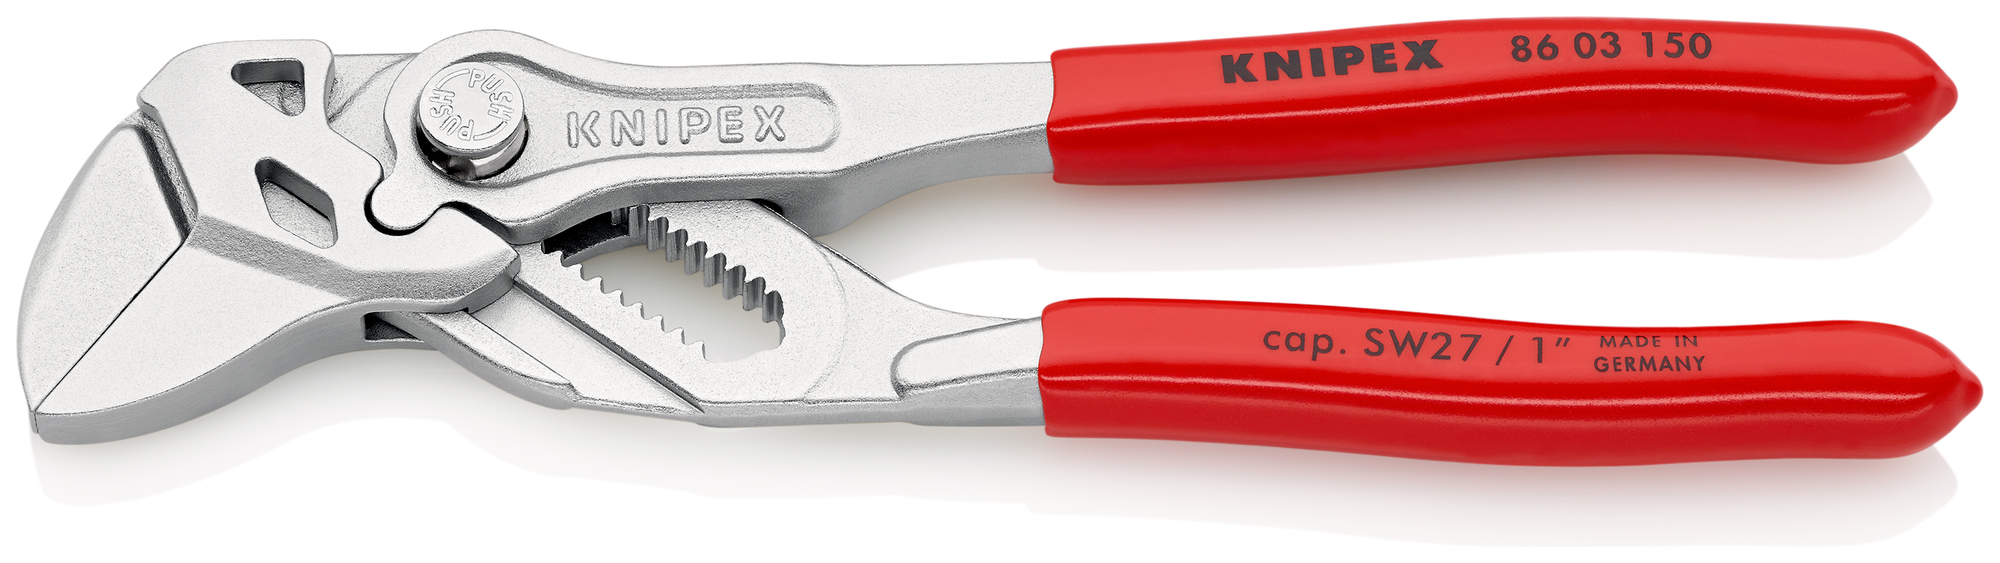 KNIPEX Kľúč kliešťový 8603150